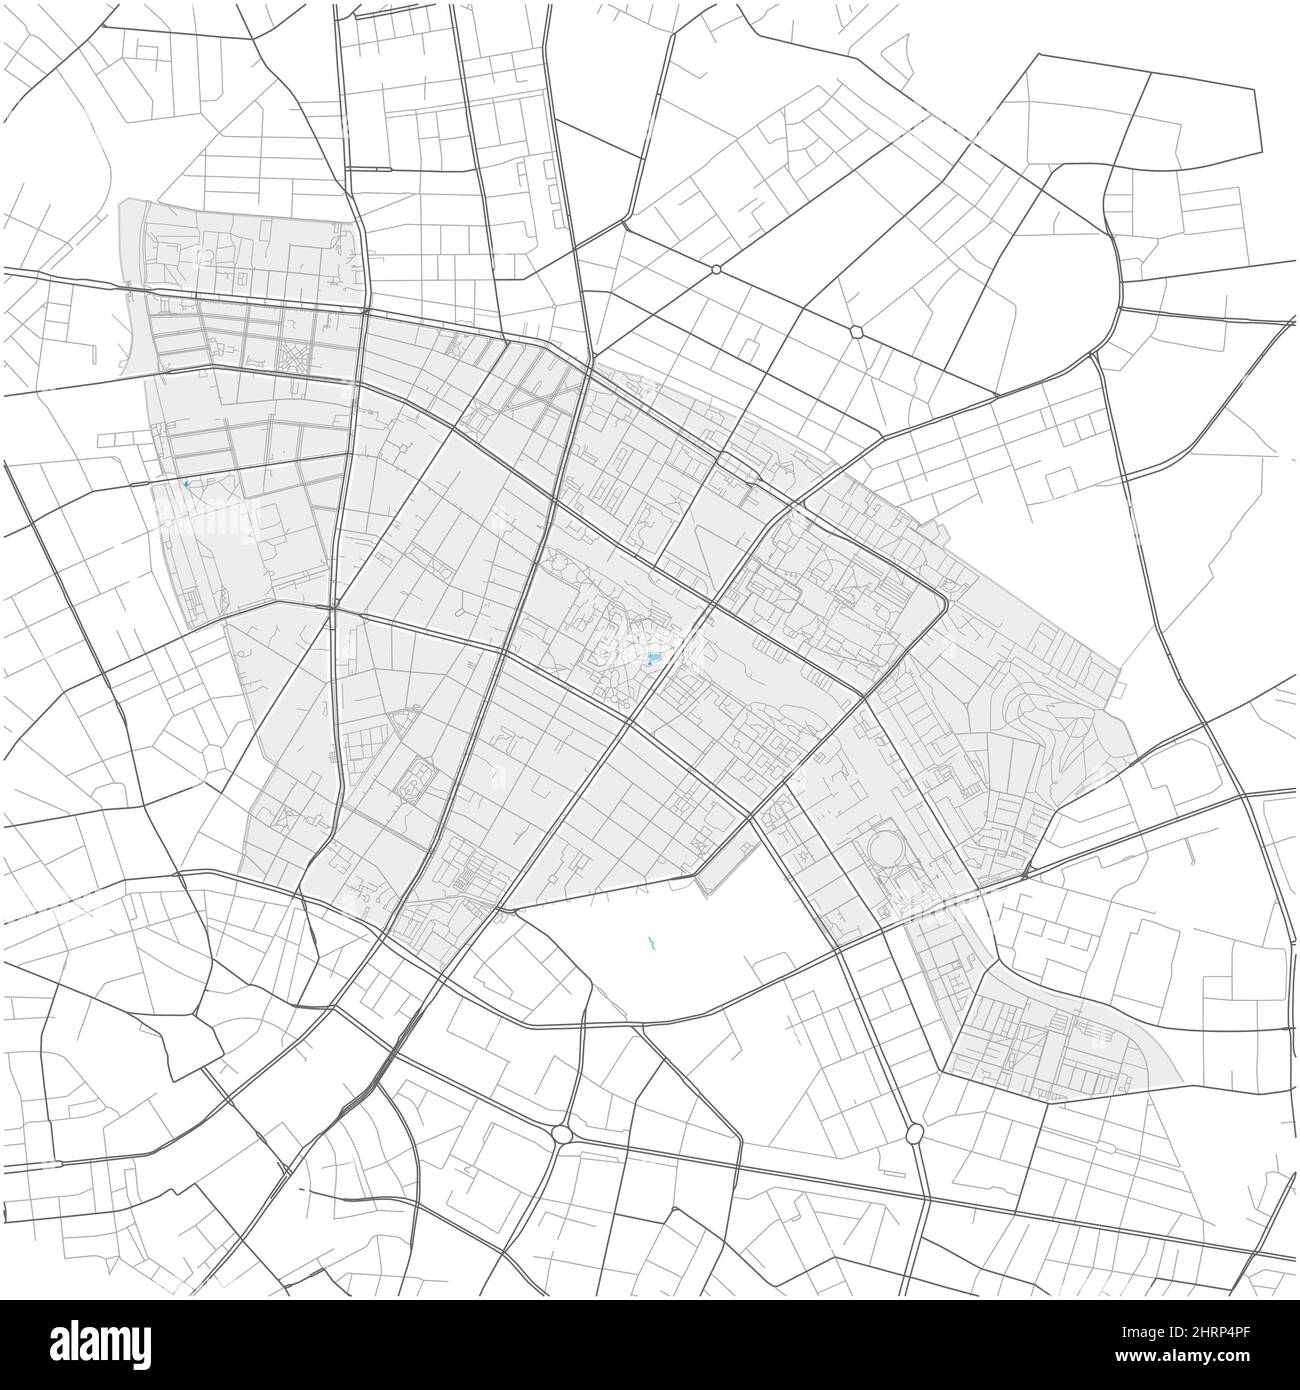 Prenzlauer Berg, Berlino, GERMANIA, mappa vettoriale di alto livello con confini della città e percorsi modificabili. Contorni bianchi per le strade principali. Molti percorsi più piccoli Illustrazione Vettoriale